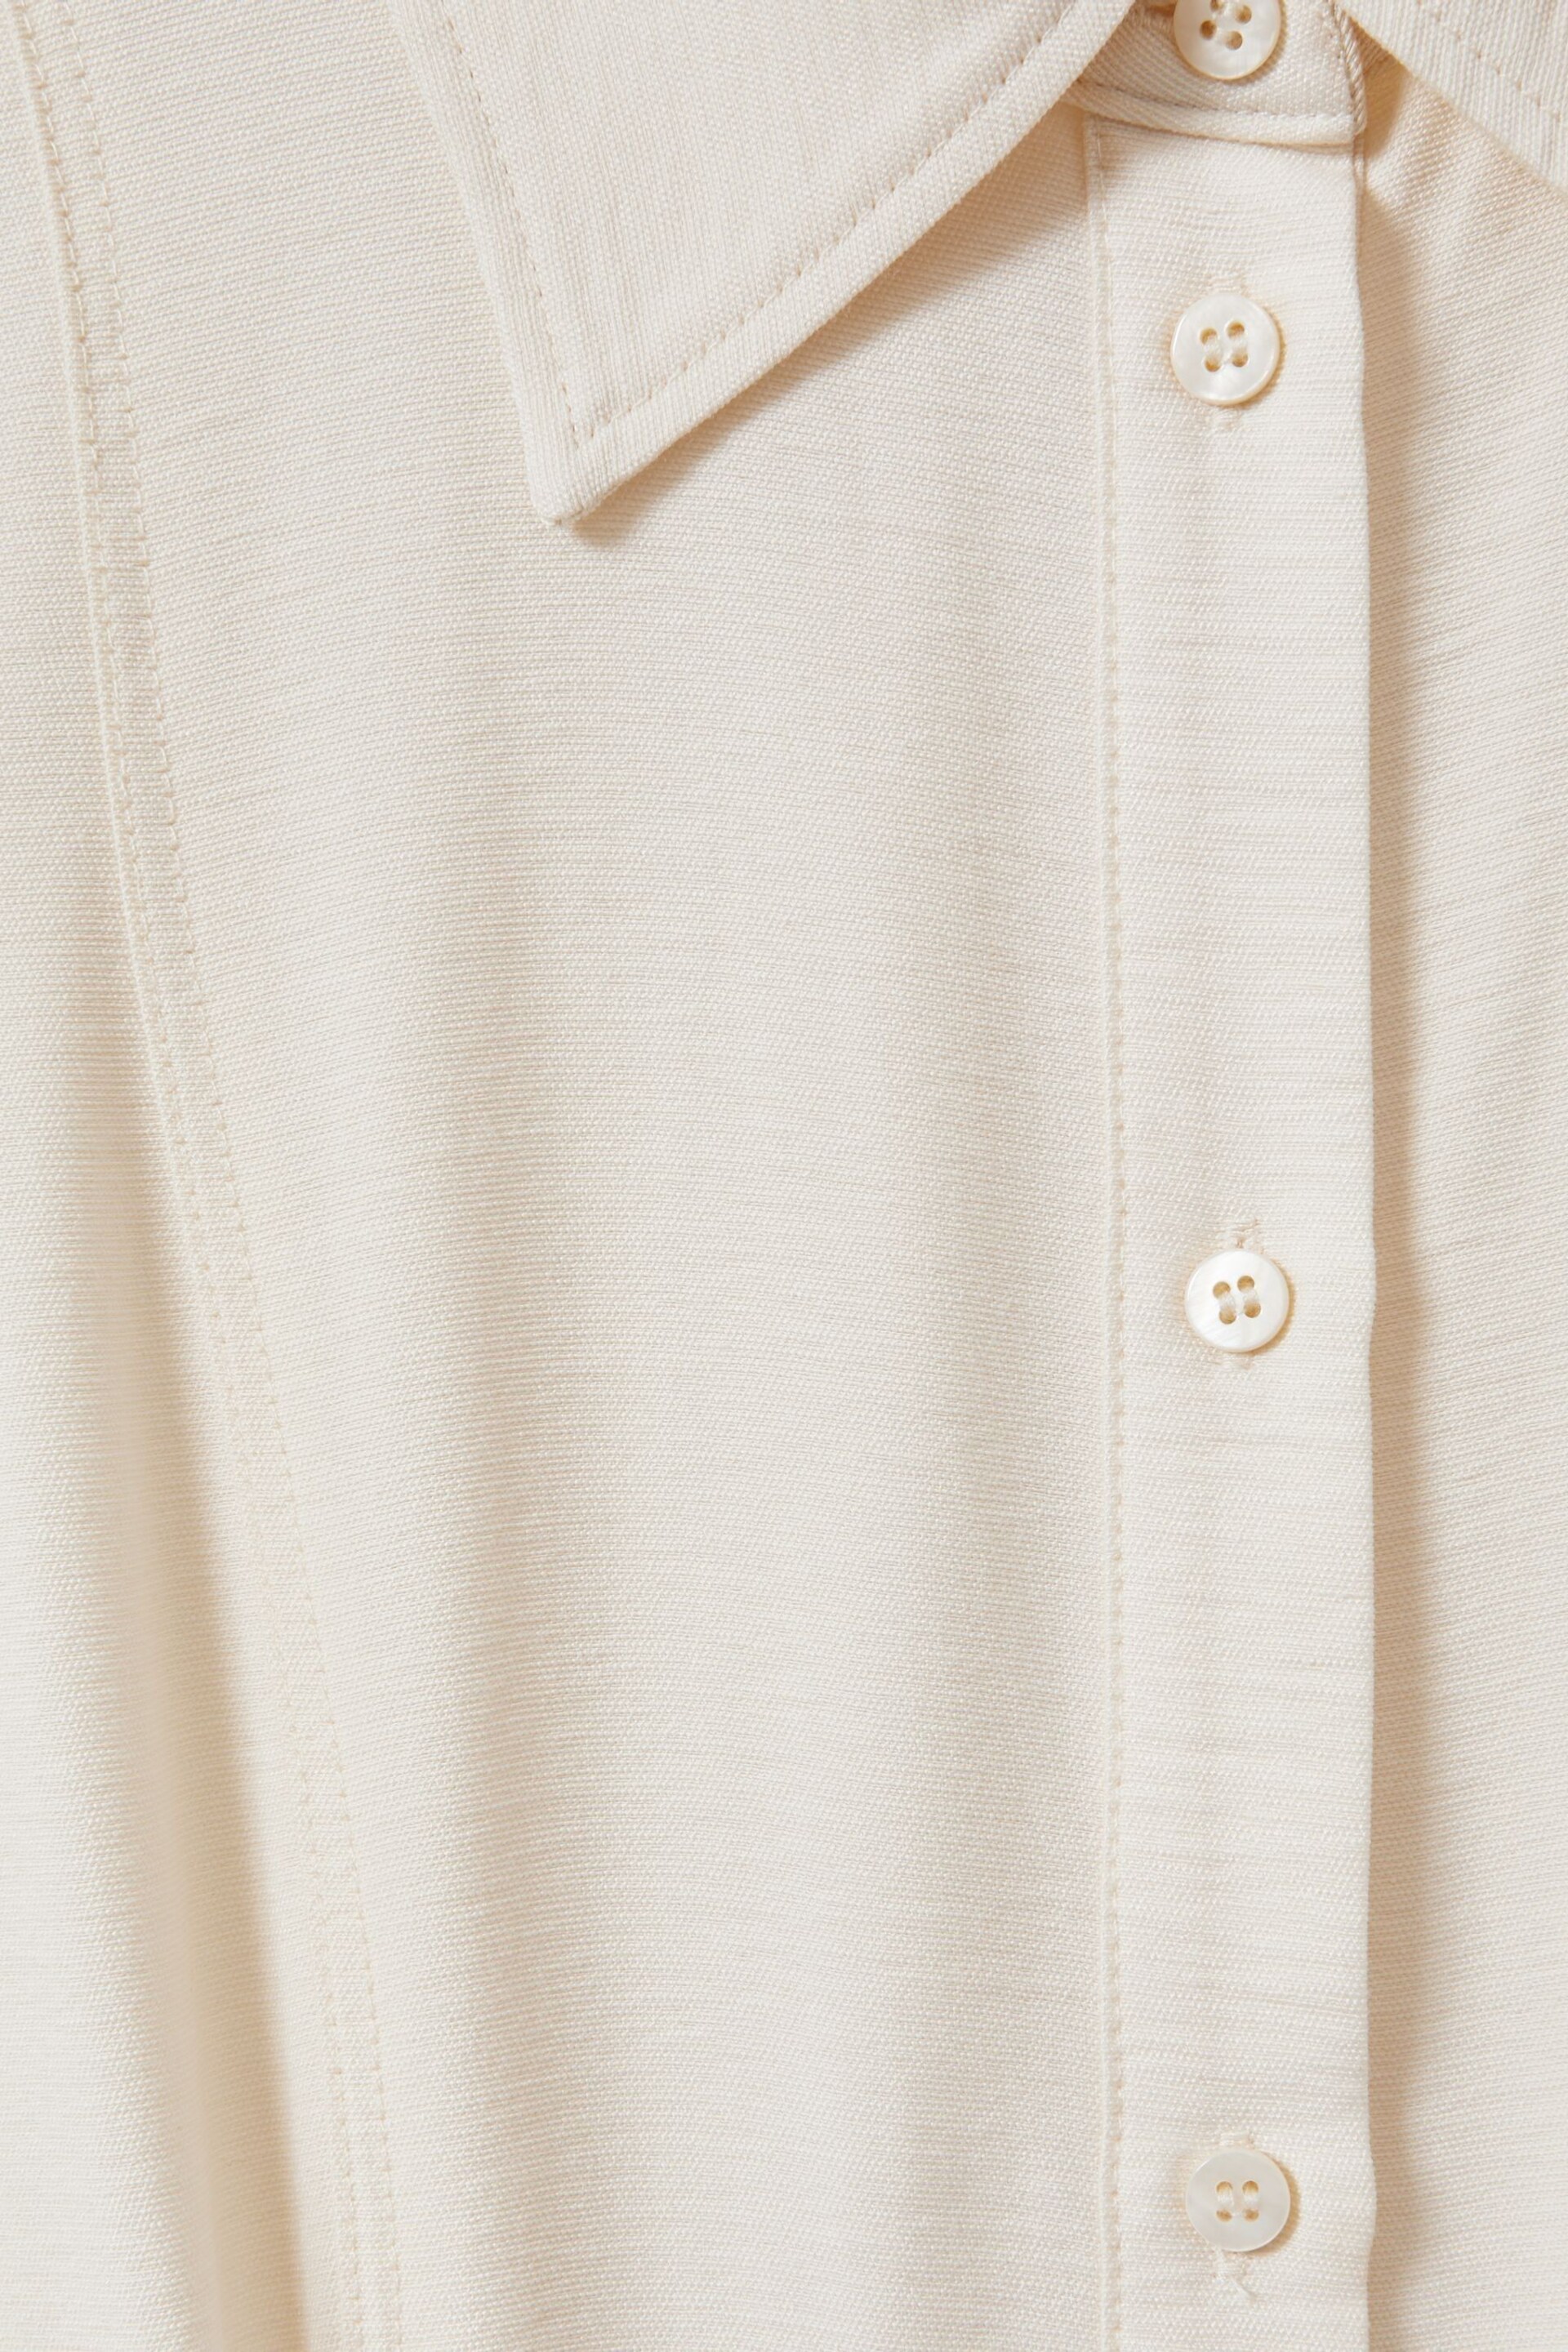 Reiss Cream Morgan Viscose Blend Belted Shirt Dress - Image 6 of 6